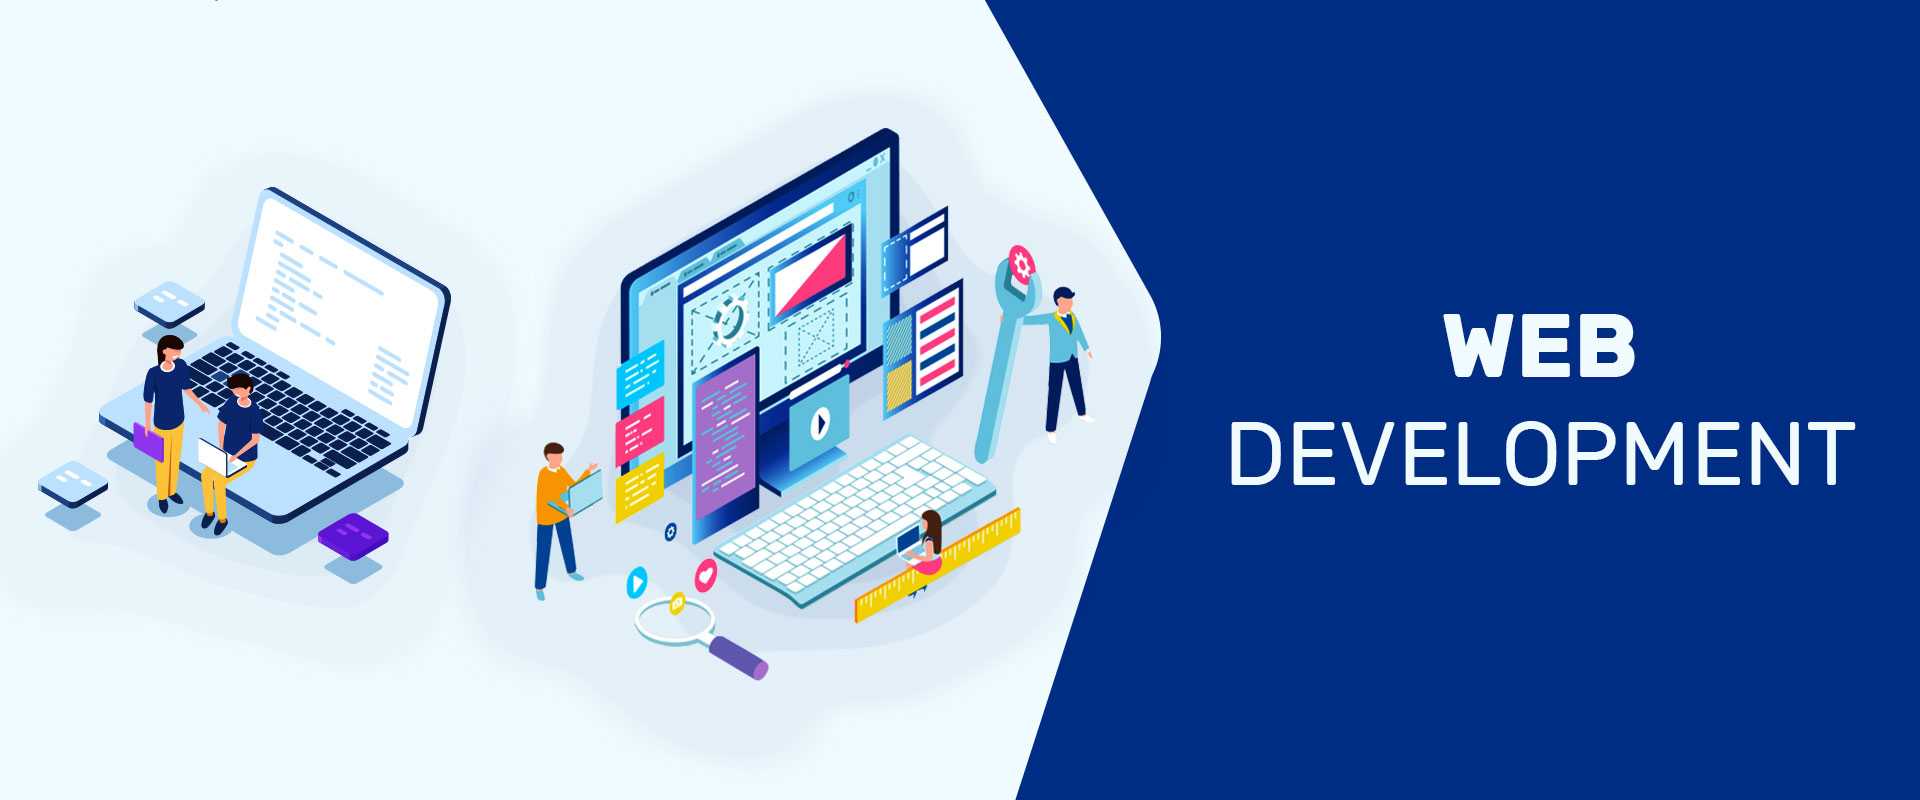 Web Development Company in Bangalore